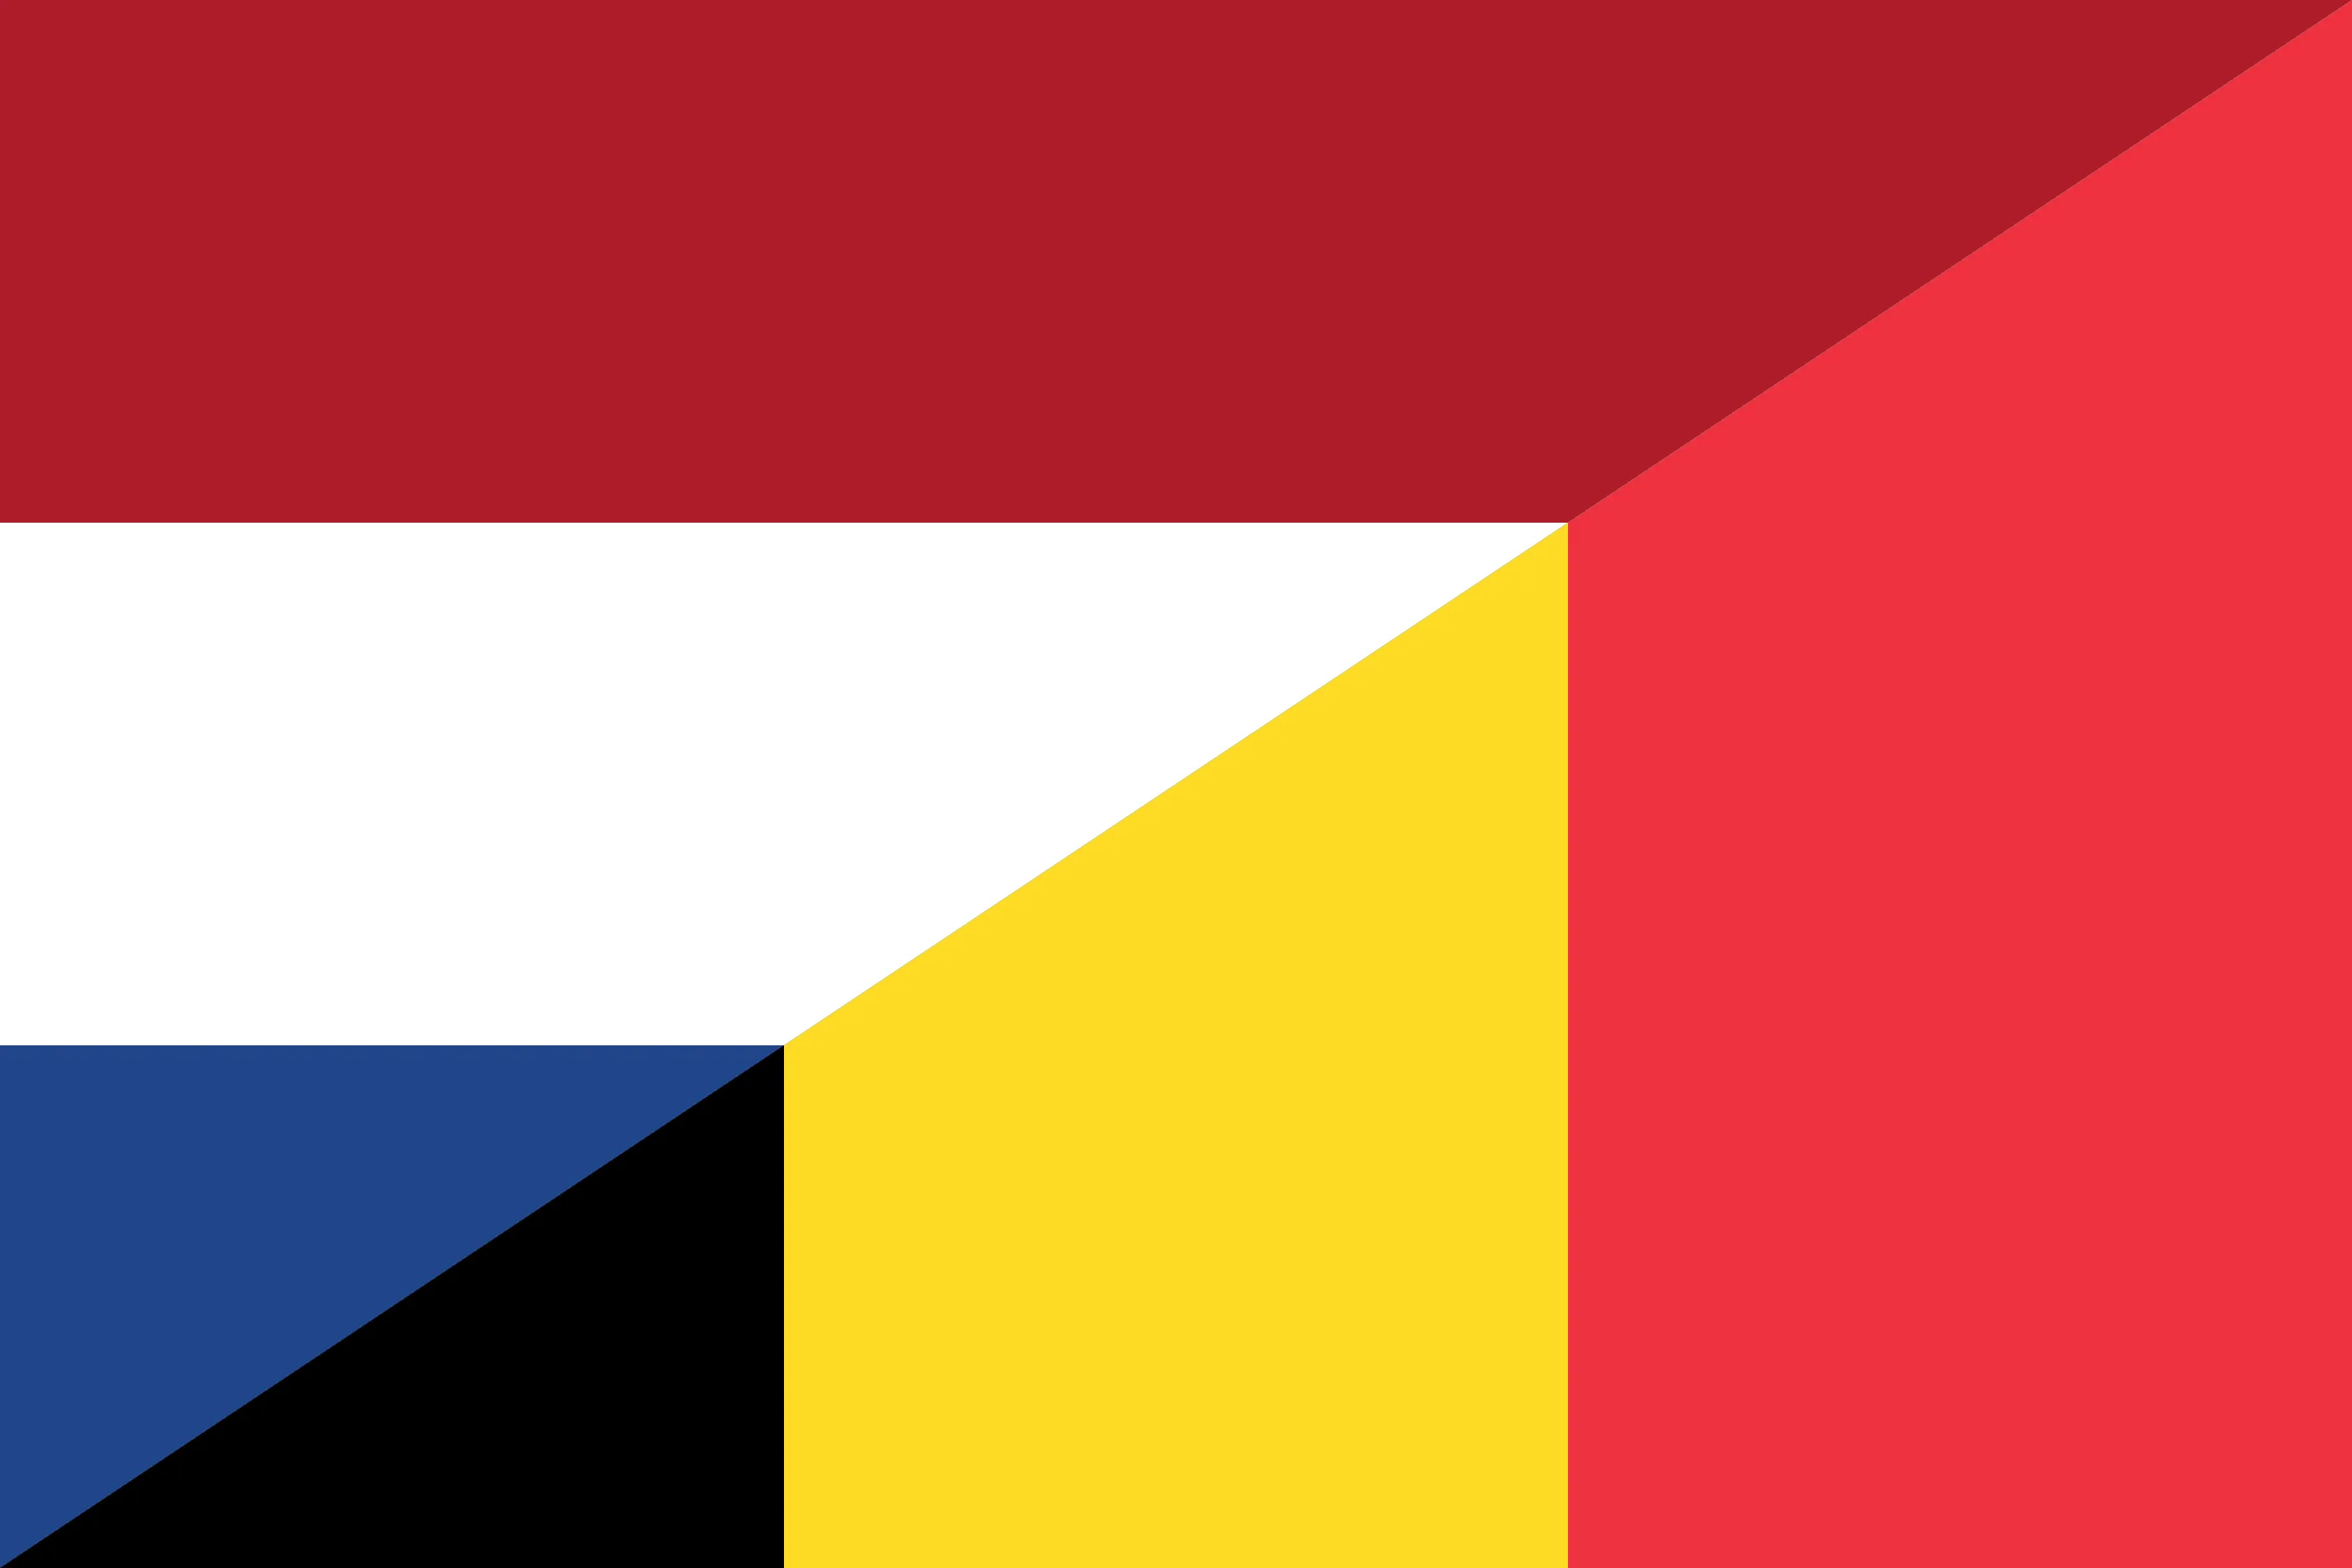 België (Nederlands)